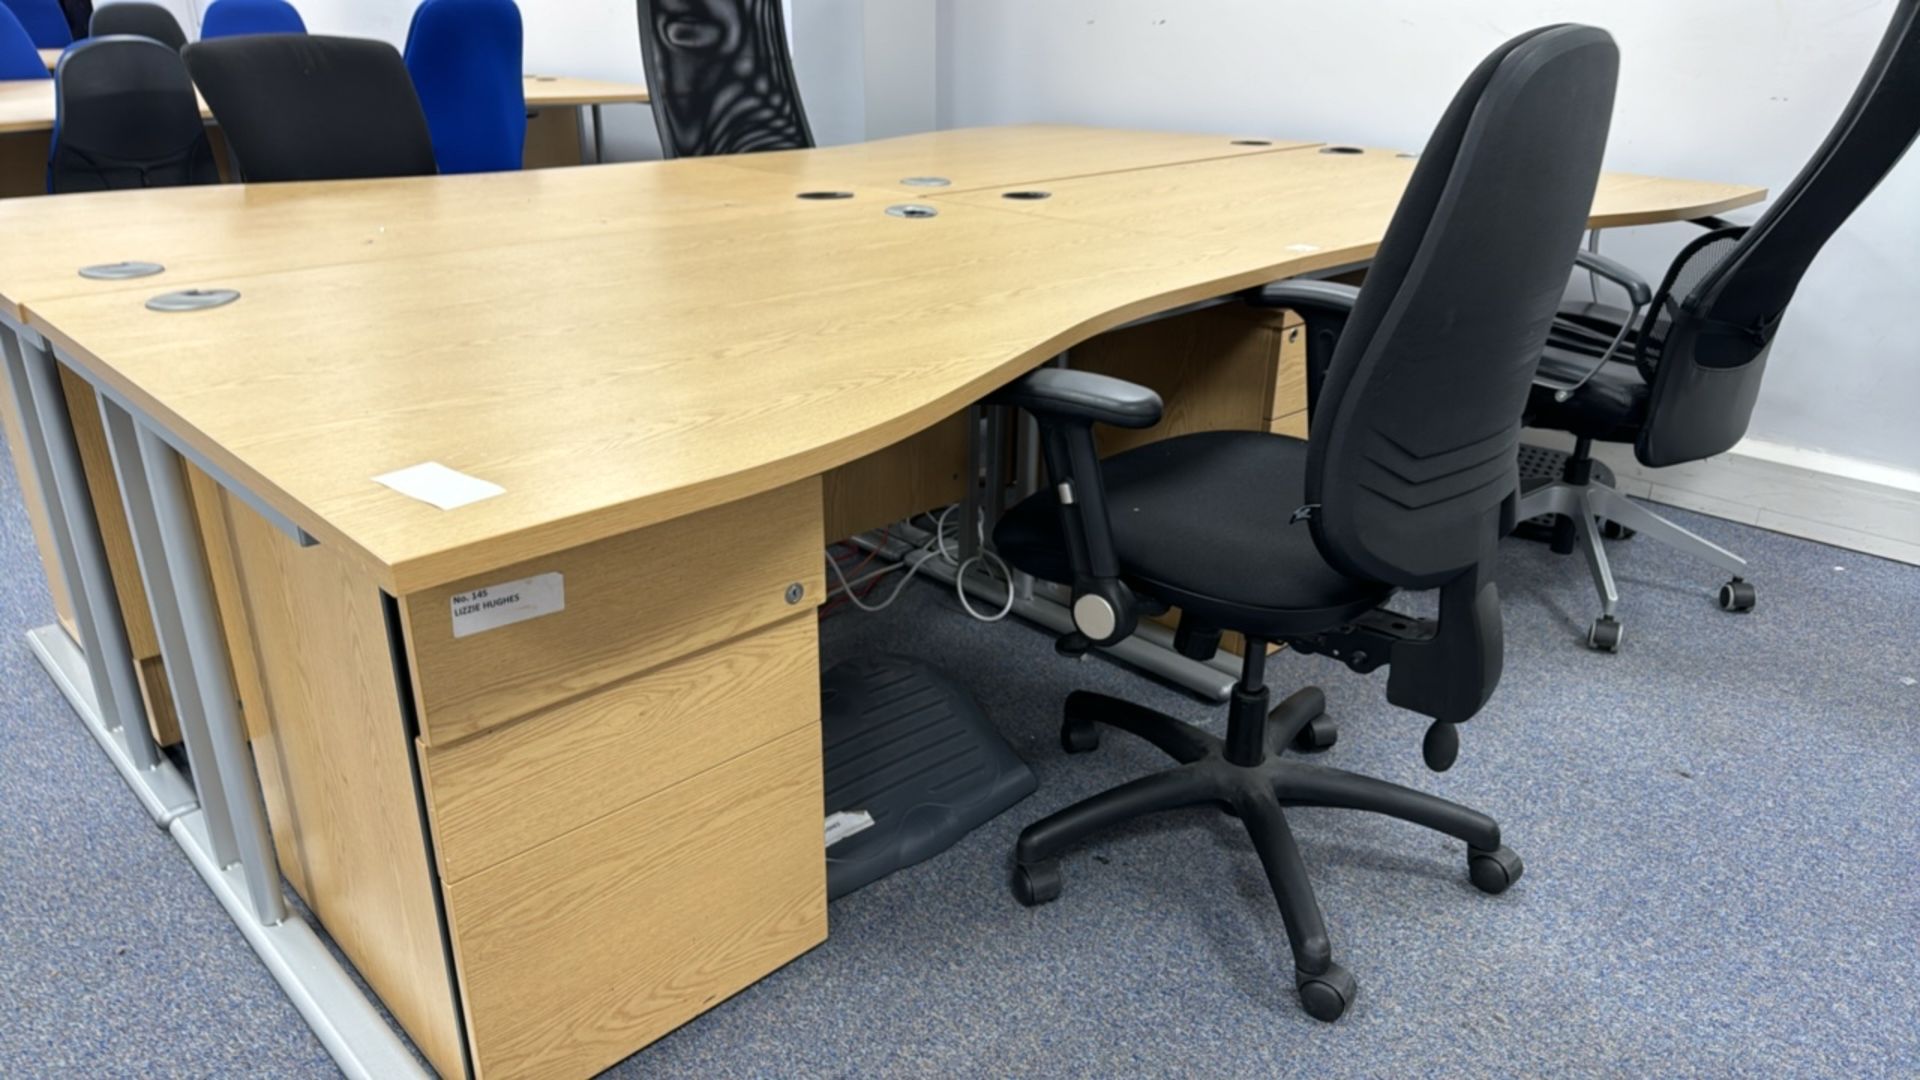 Wooden Effect Office Desks x4 With Office Chairs x4 - Bild 3 aus 3